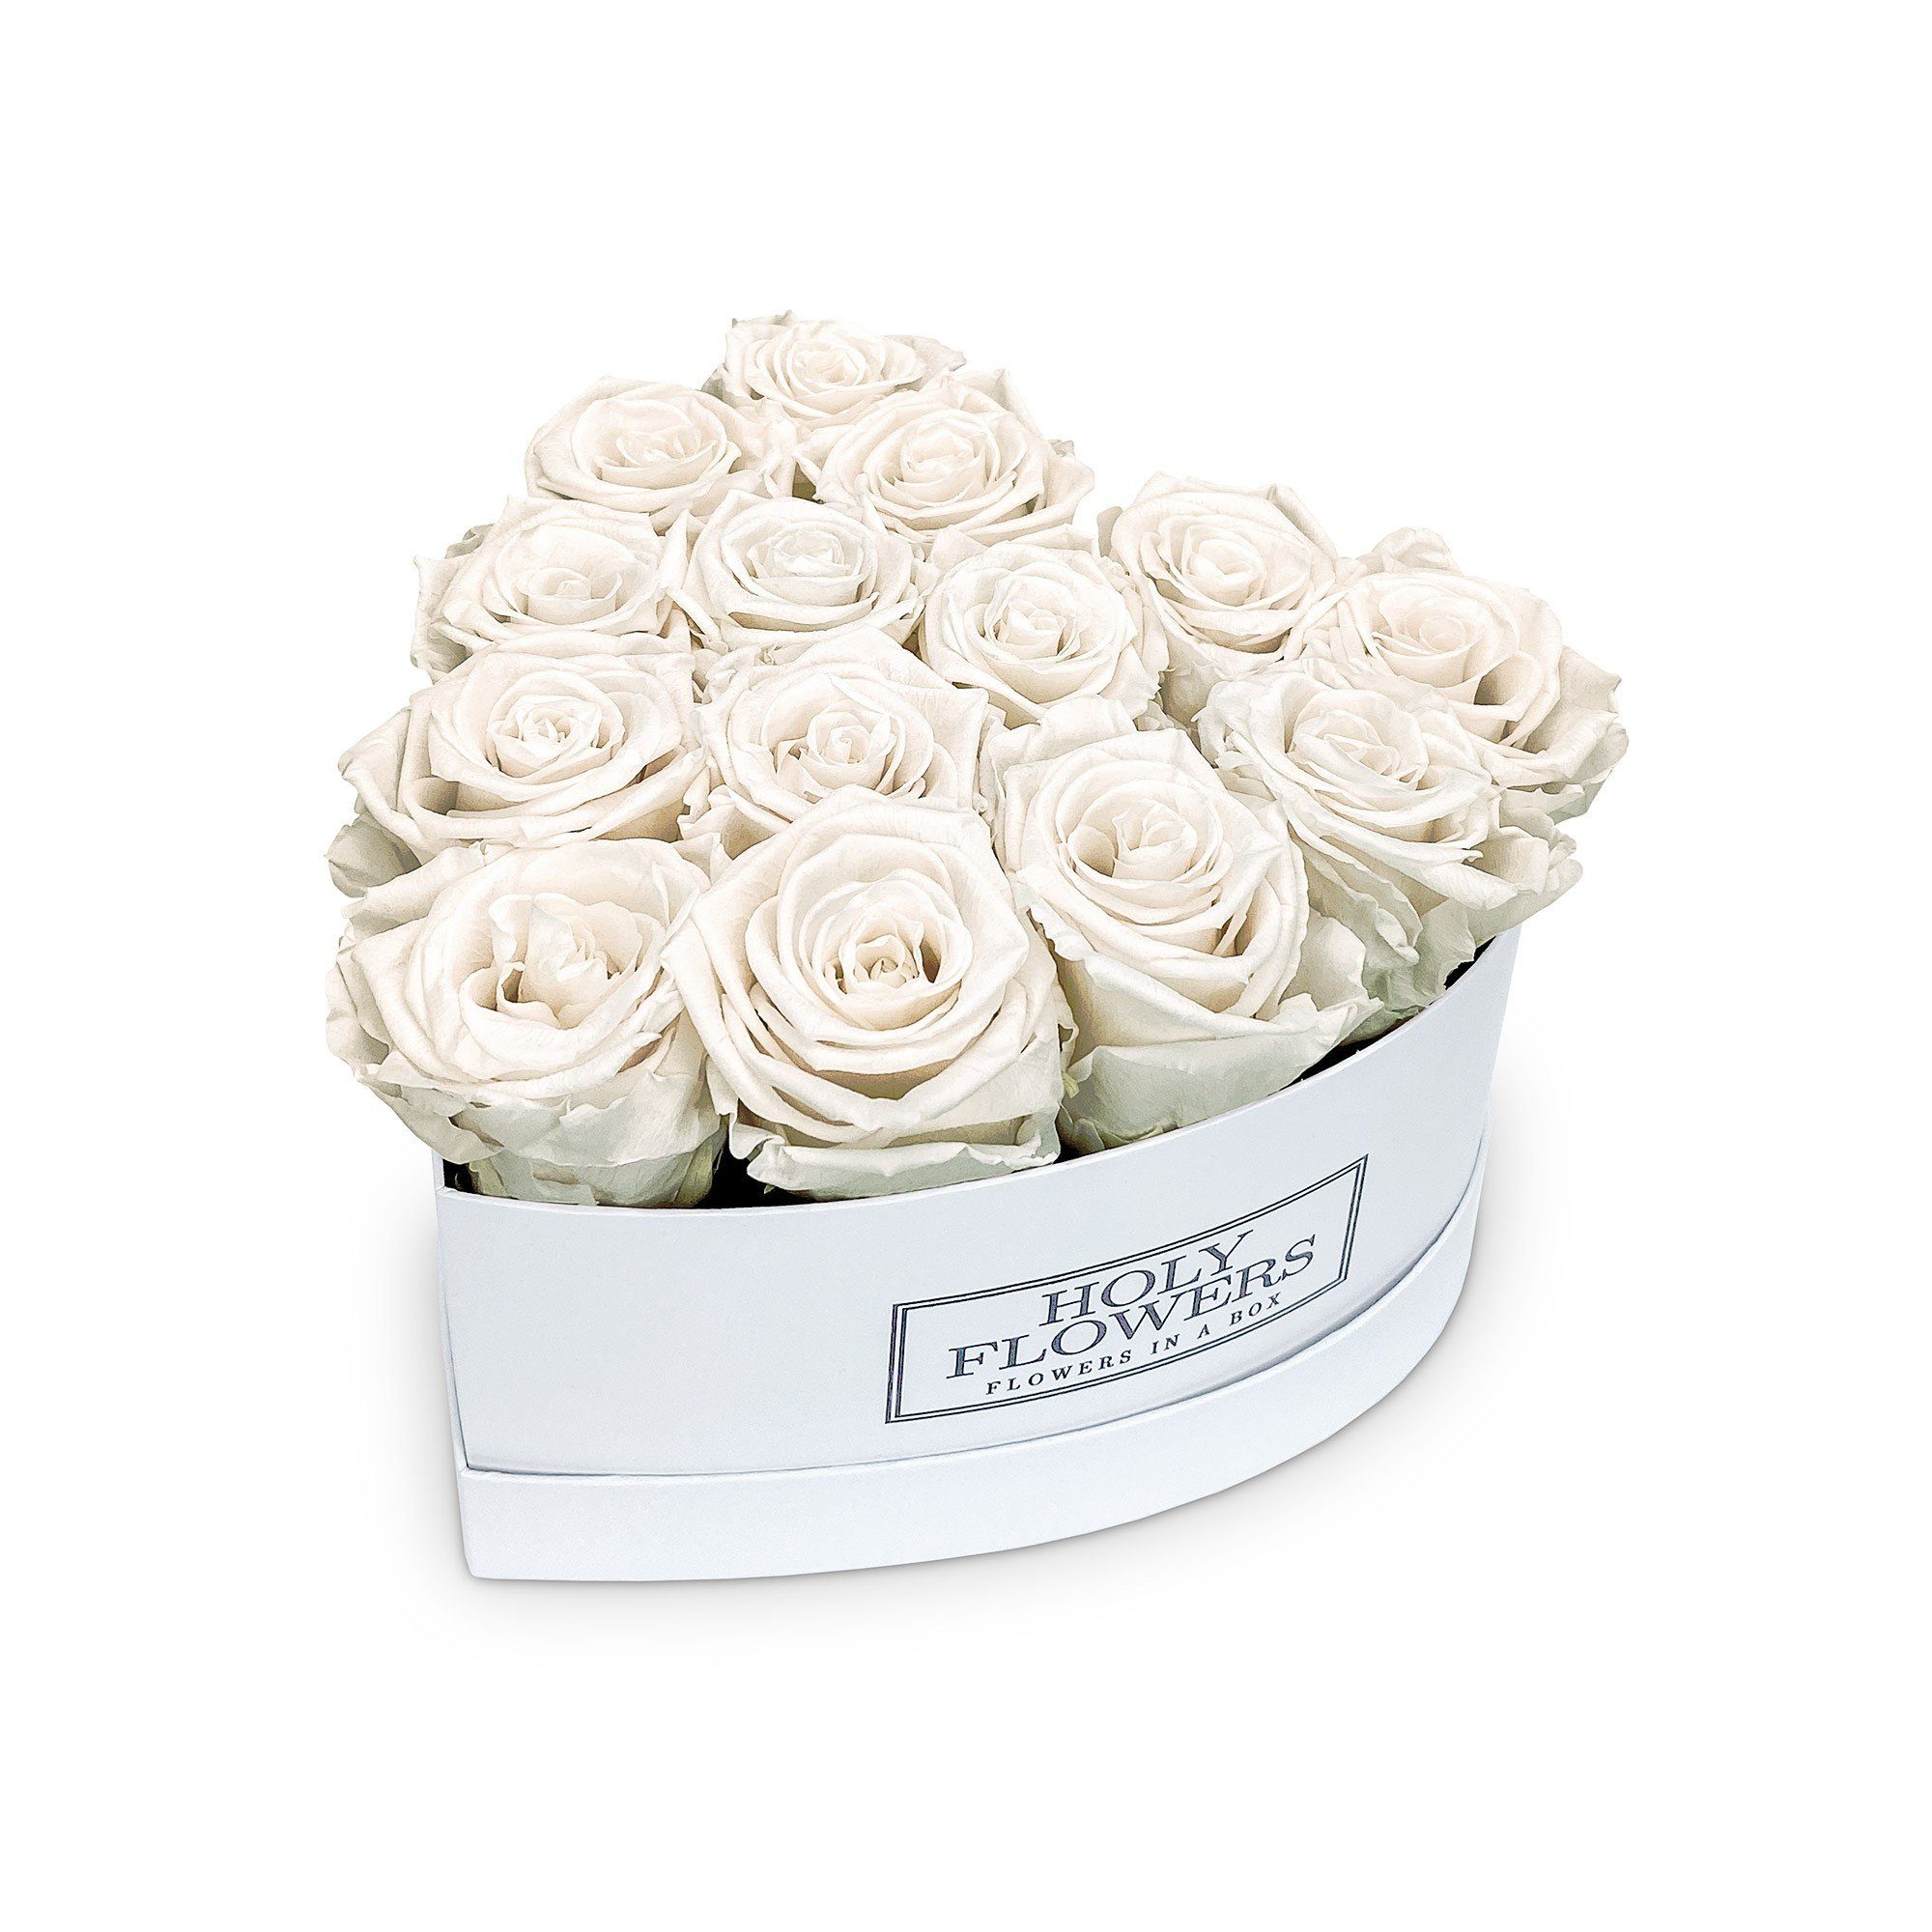 Petite Fleur Infinity Rosen Flowerbox S weiß langanhaltende farbenprächtige rosa Blüten 4 bis 5 konservierte Rosen quadratisch 10 x 15 cm